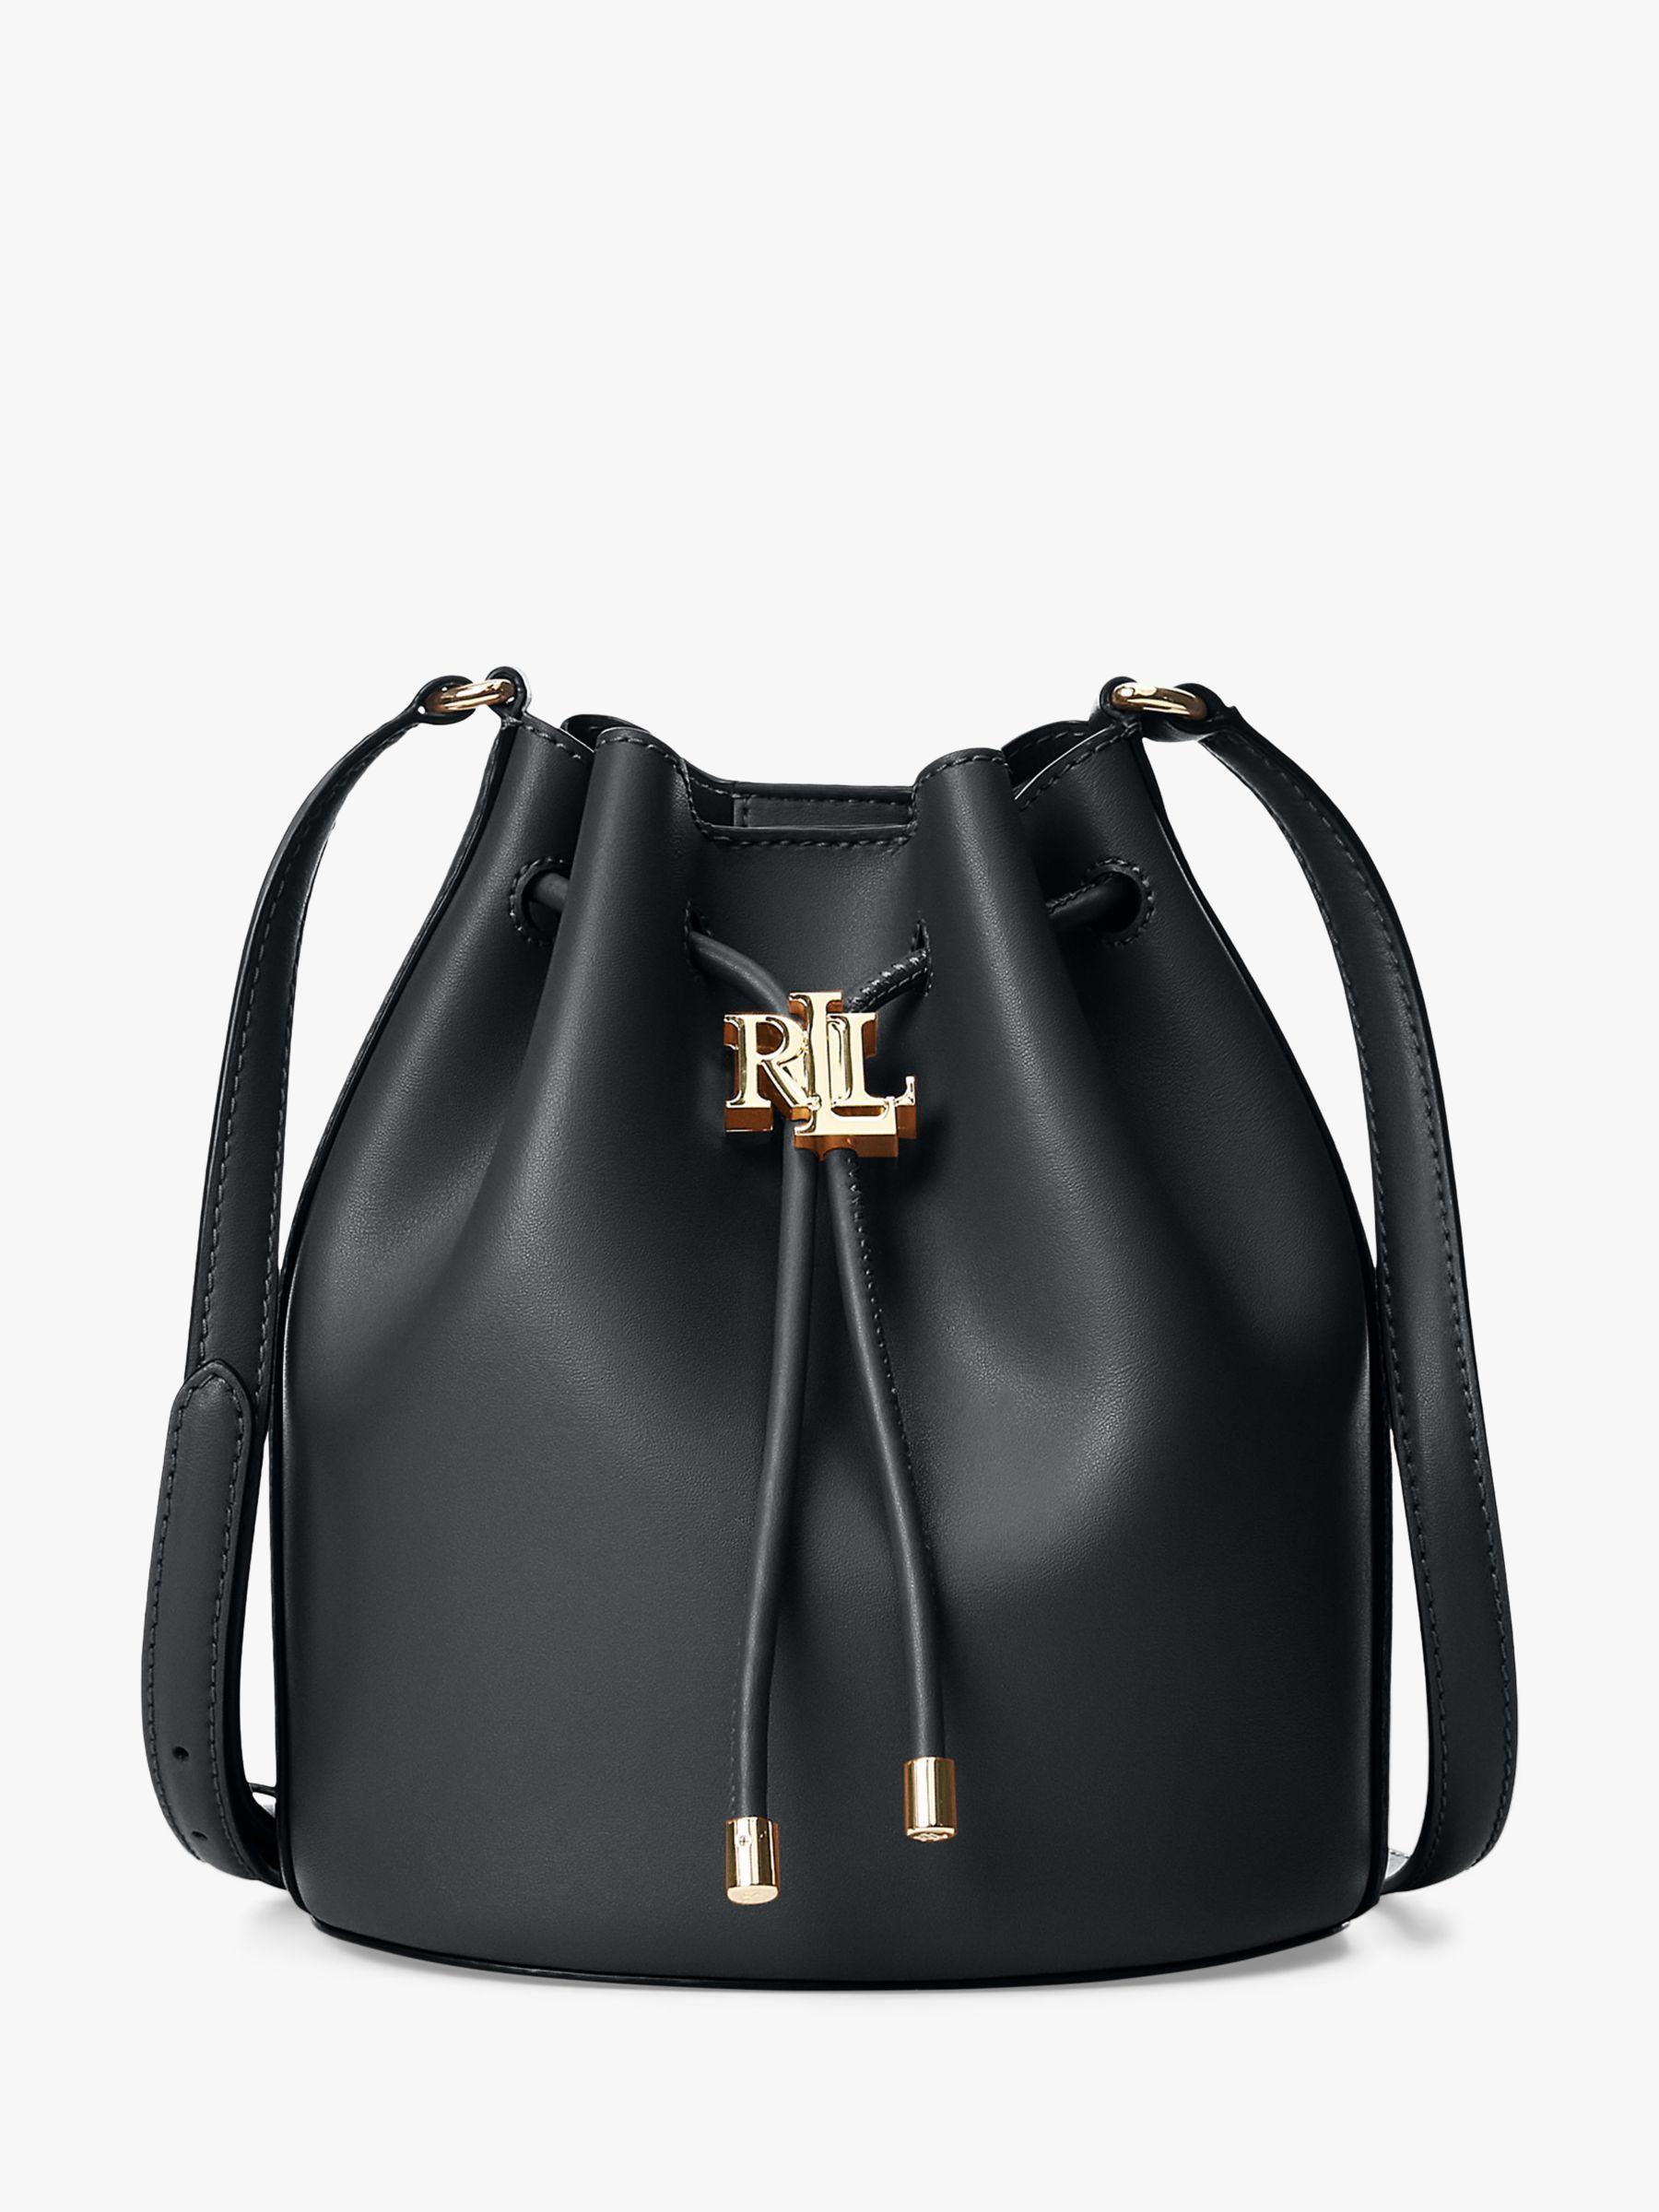 Ralph Lauren Lauren Andie 19 Leather Bucket Bag in Blue - Save 30% - Lyst